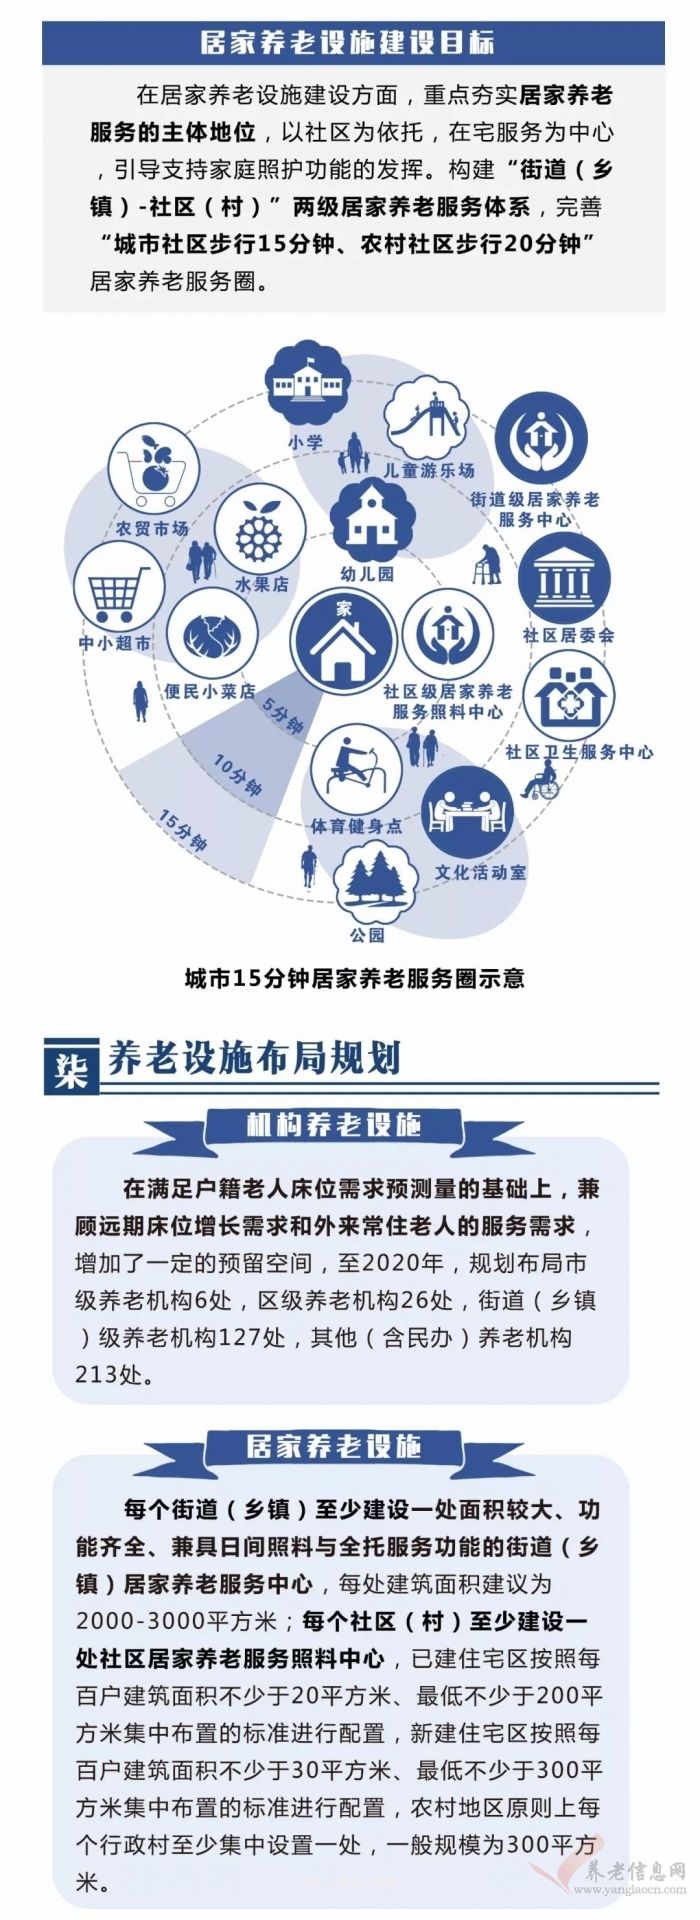 今后杭州养老设施如何布局？一图读懂未来规划